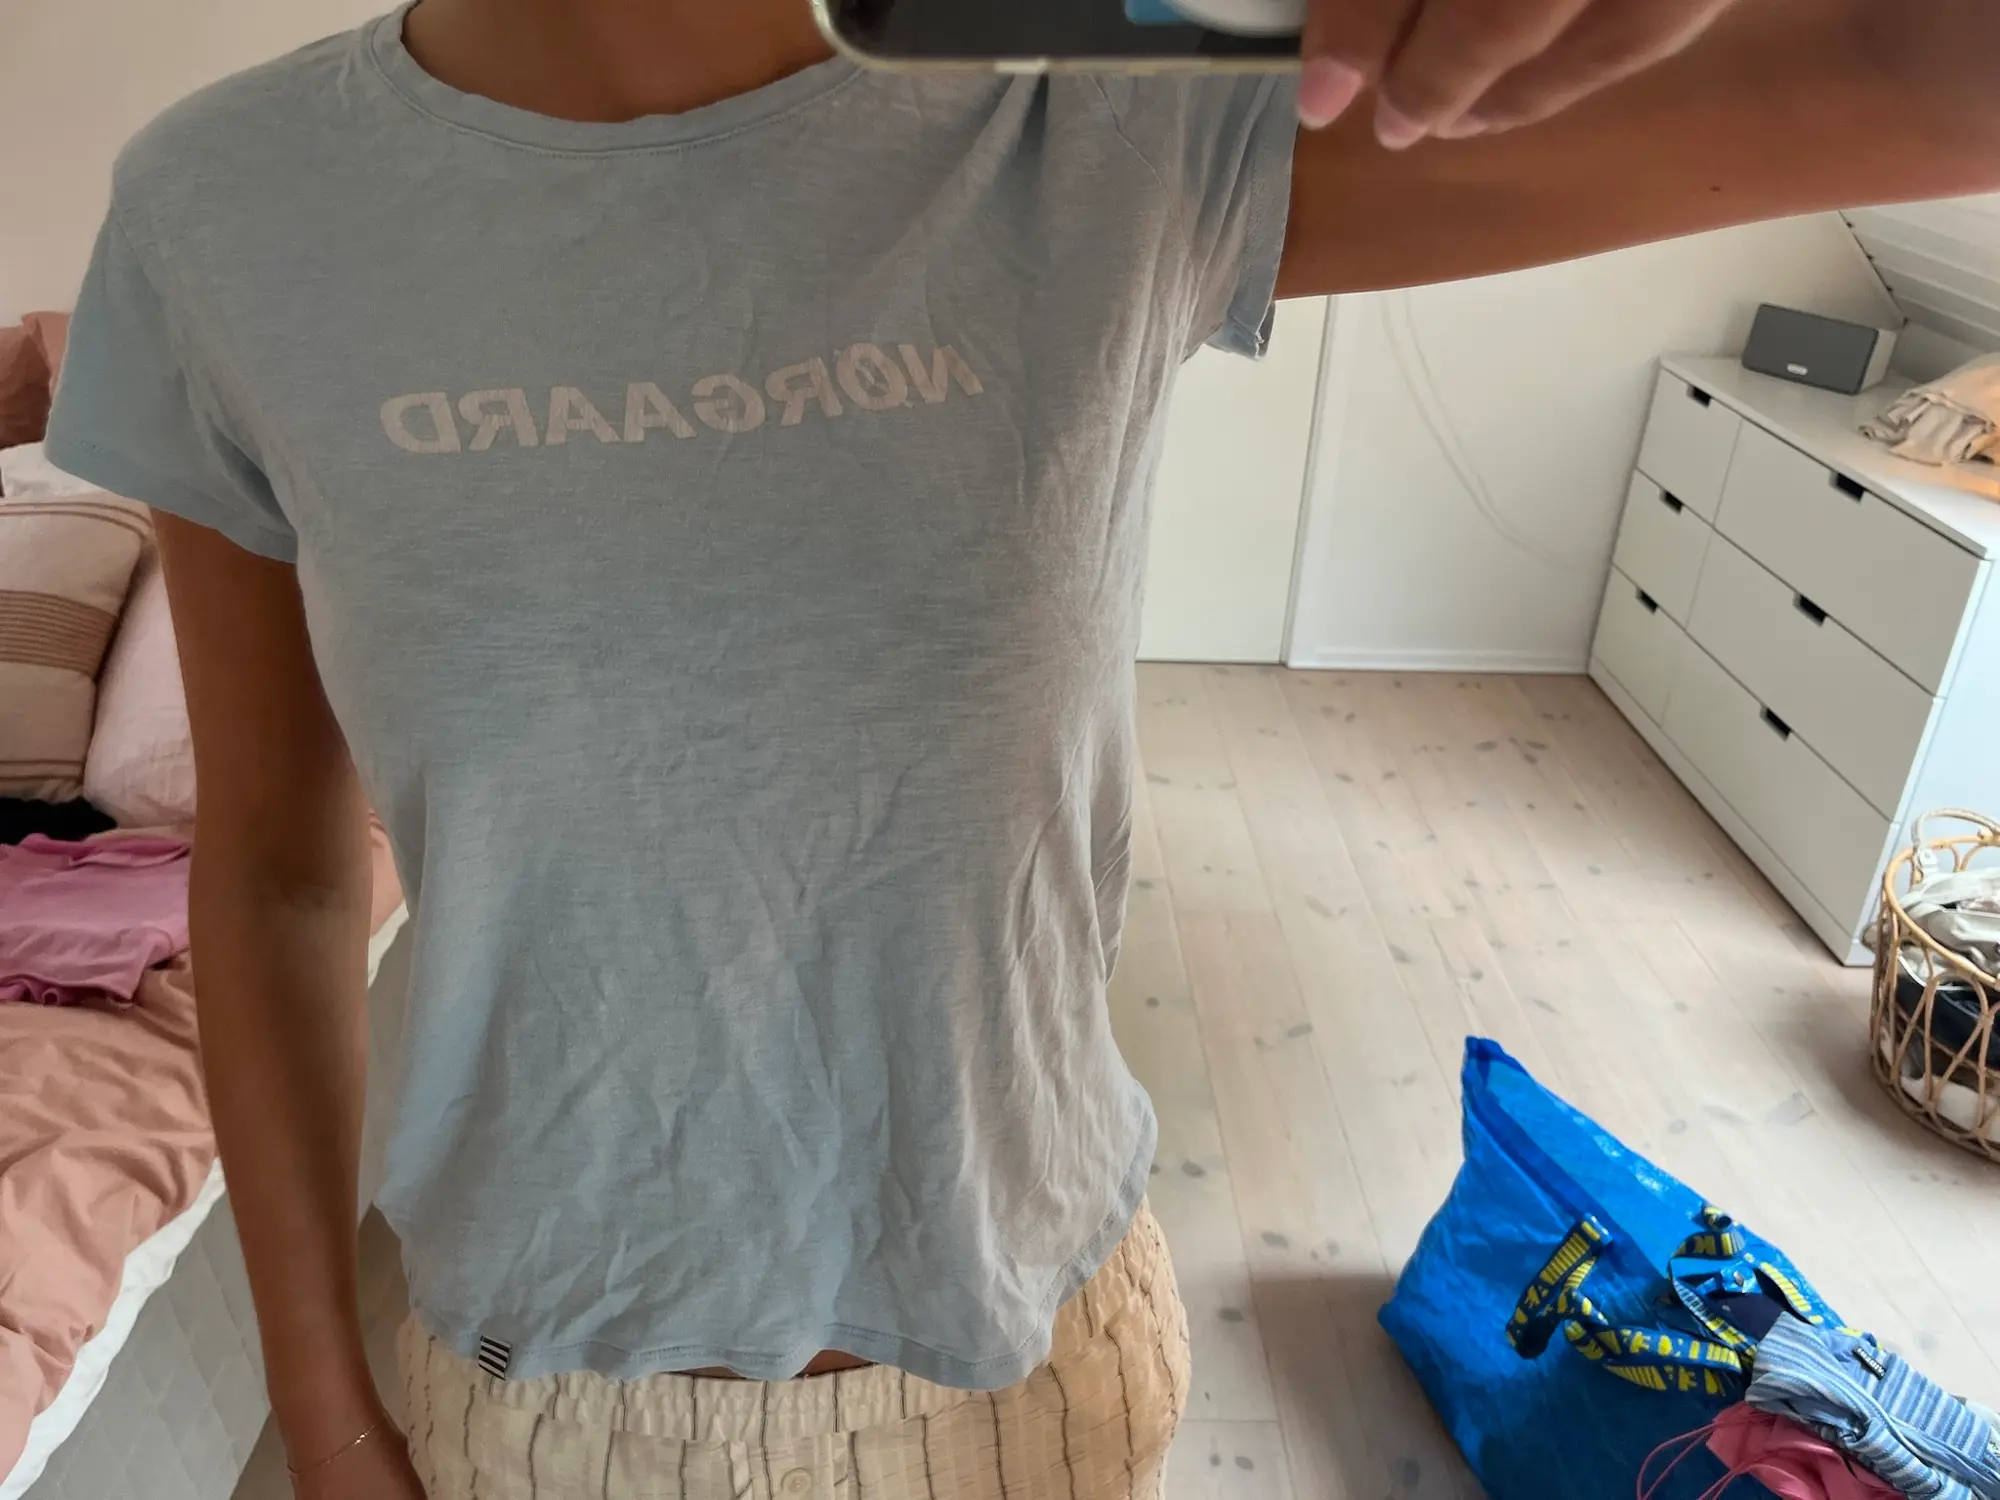 Mads Nørgaard t-shirt